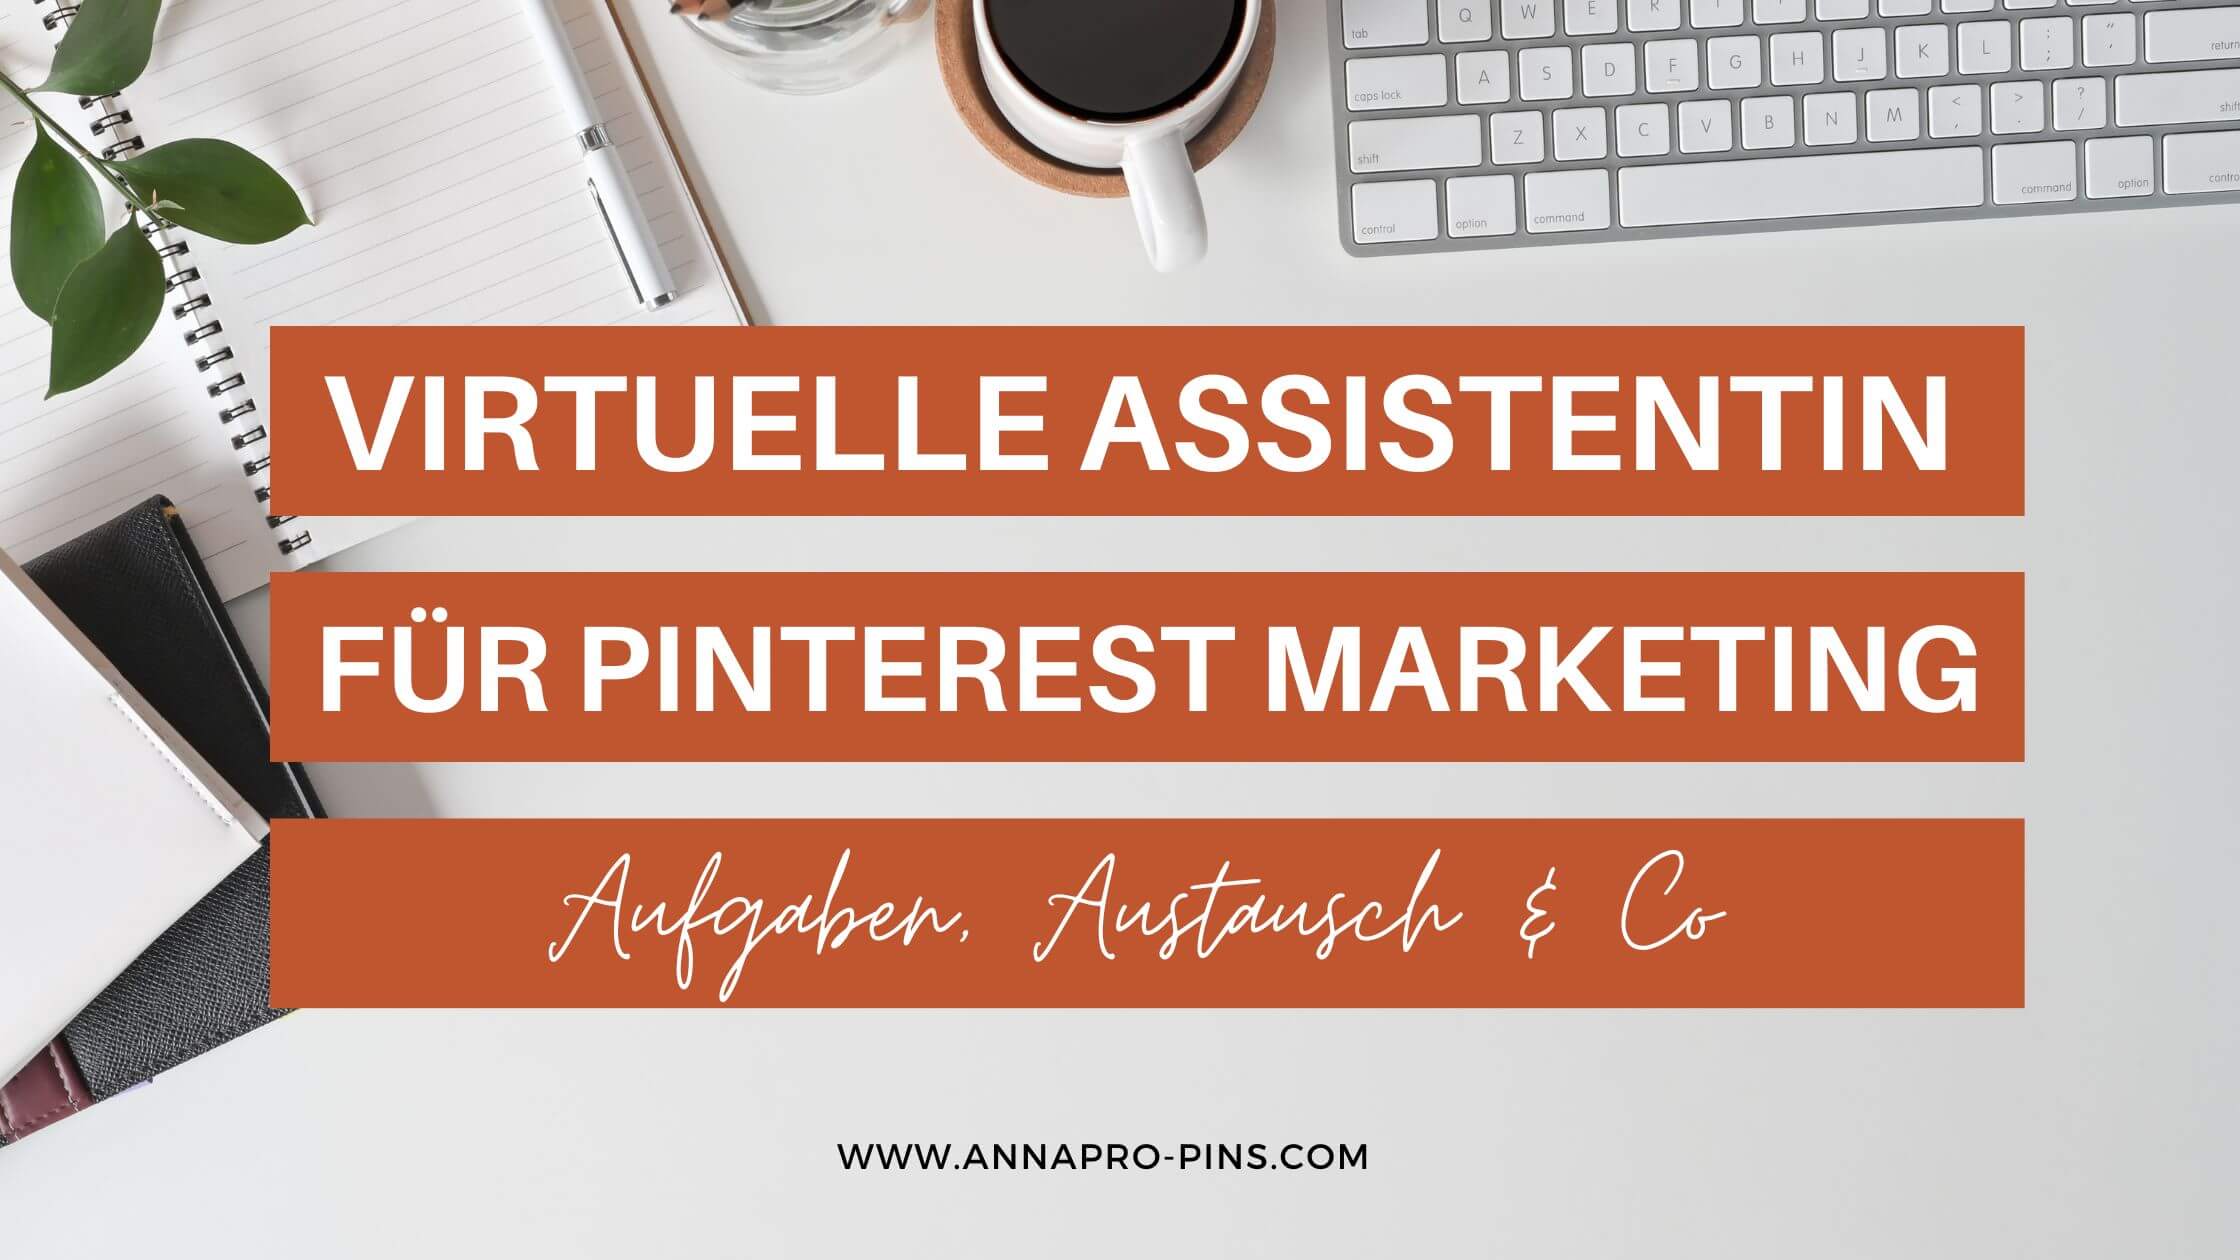 Virtuelle Assistentin für Pinterest Marketing - Aufgaben, Austausch & Co